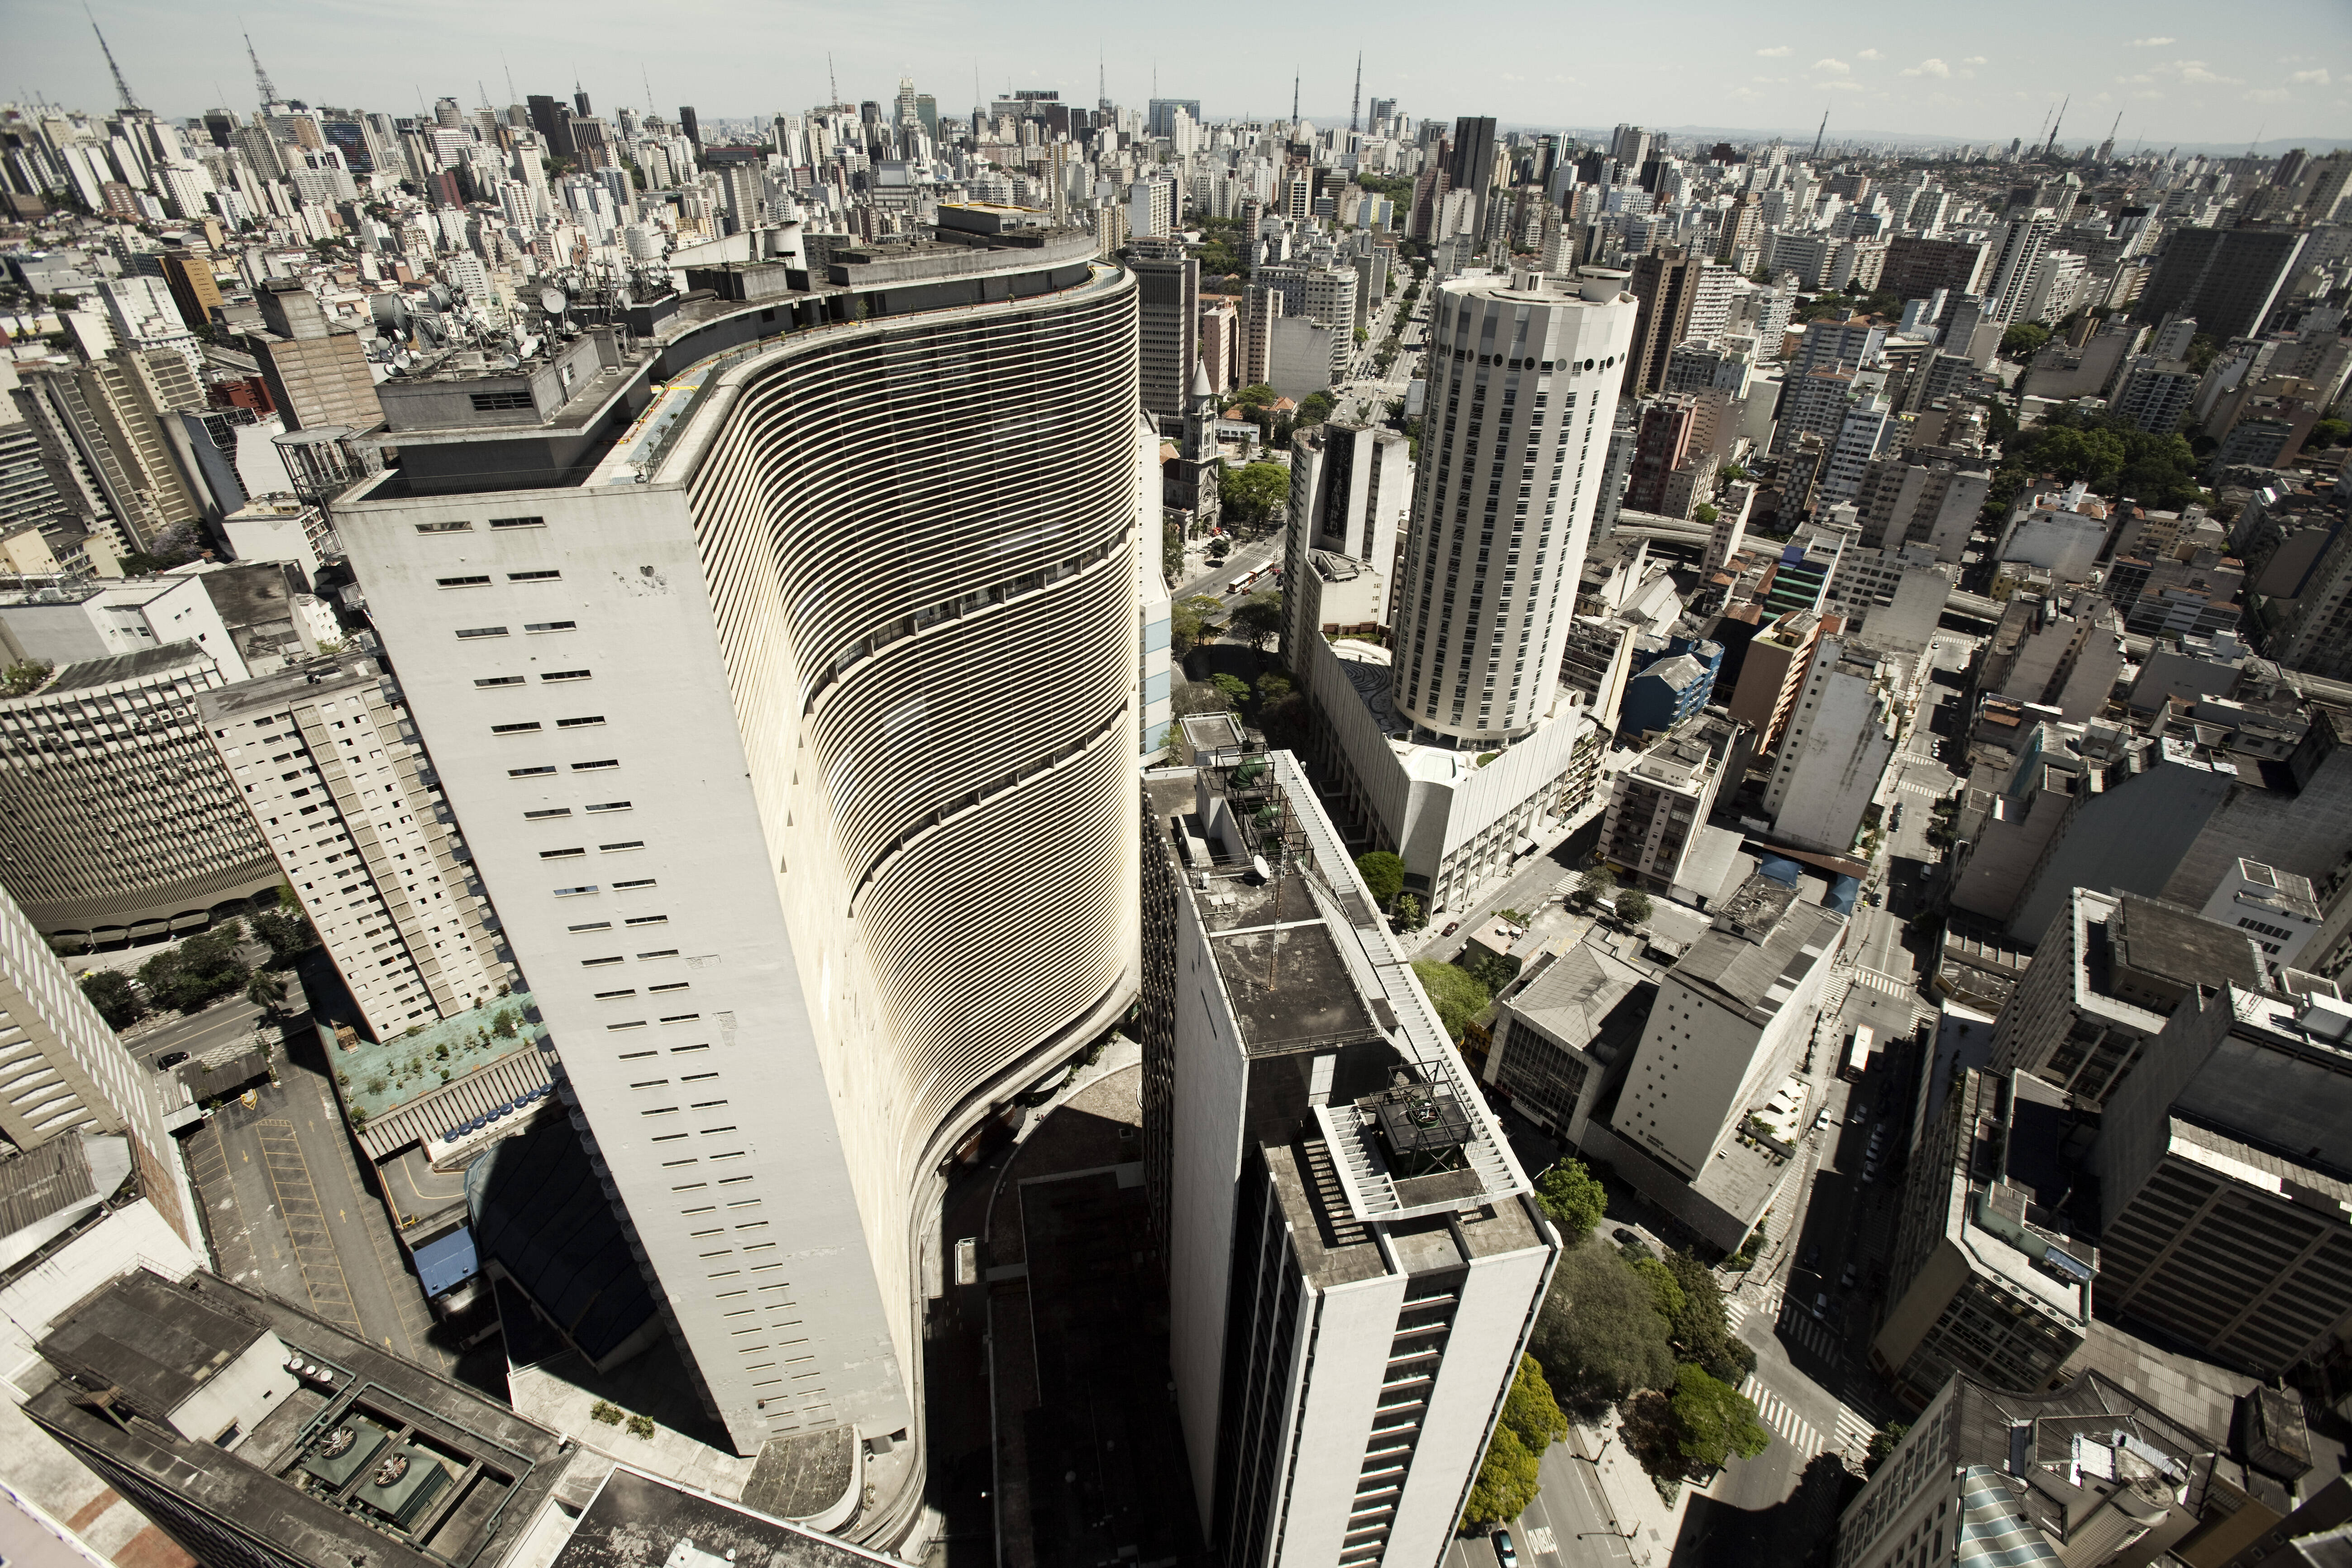 Edifício Copan, com 38 andares, foi projetado pelo arquiteto Oscar Niemeyer